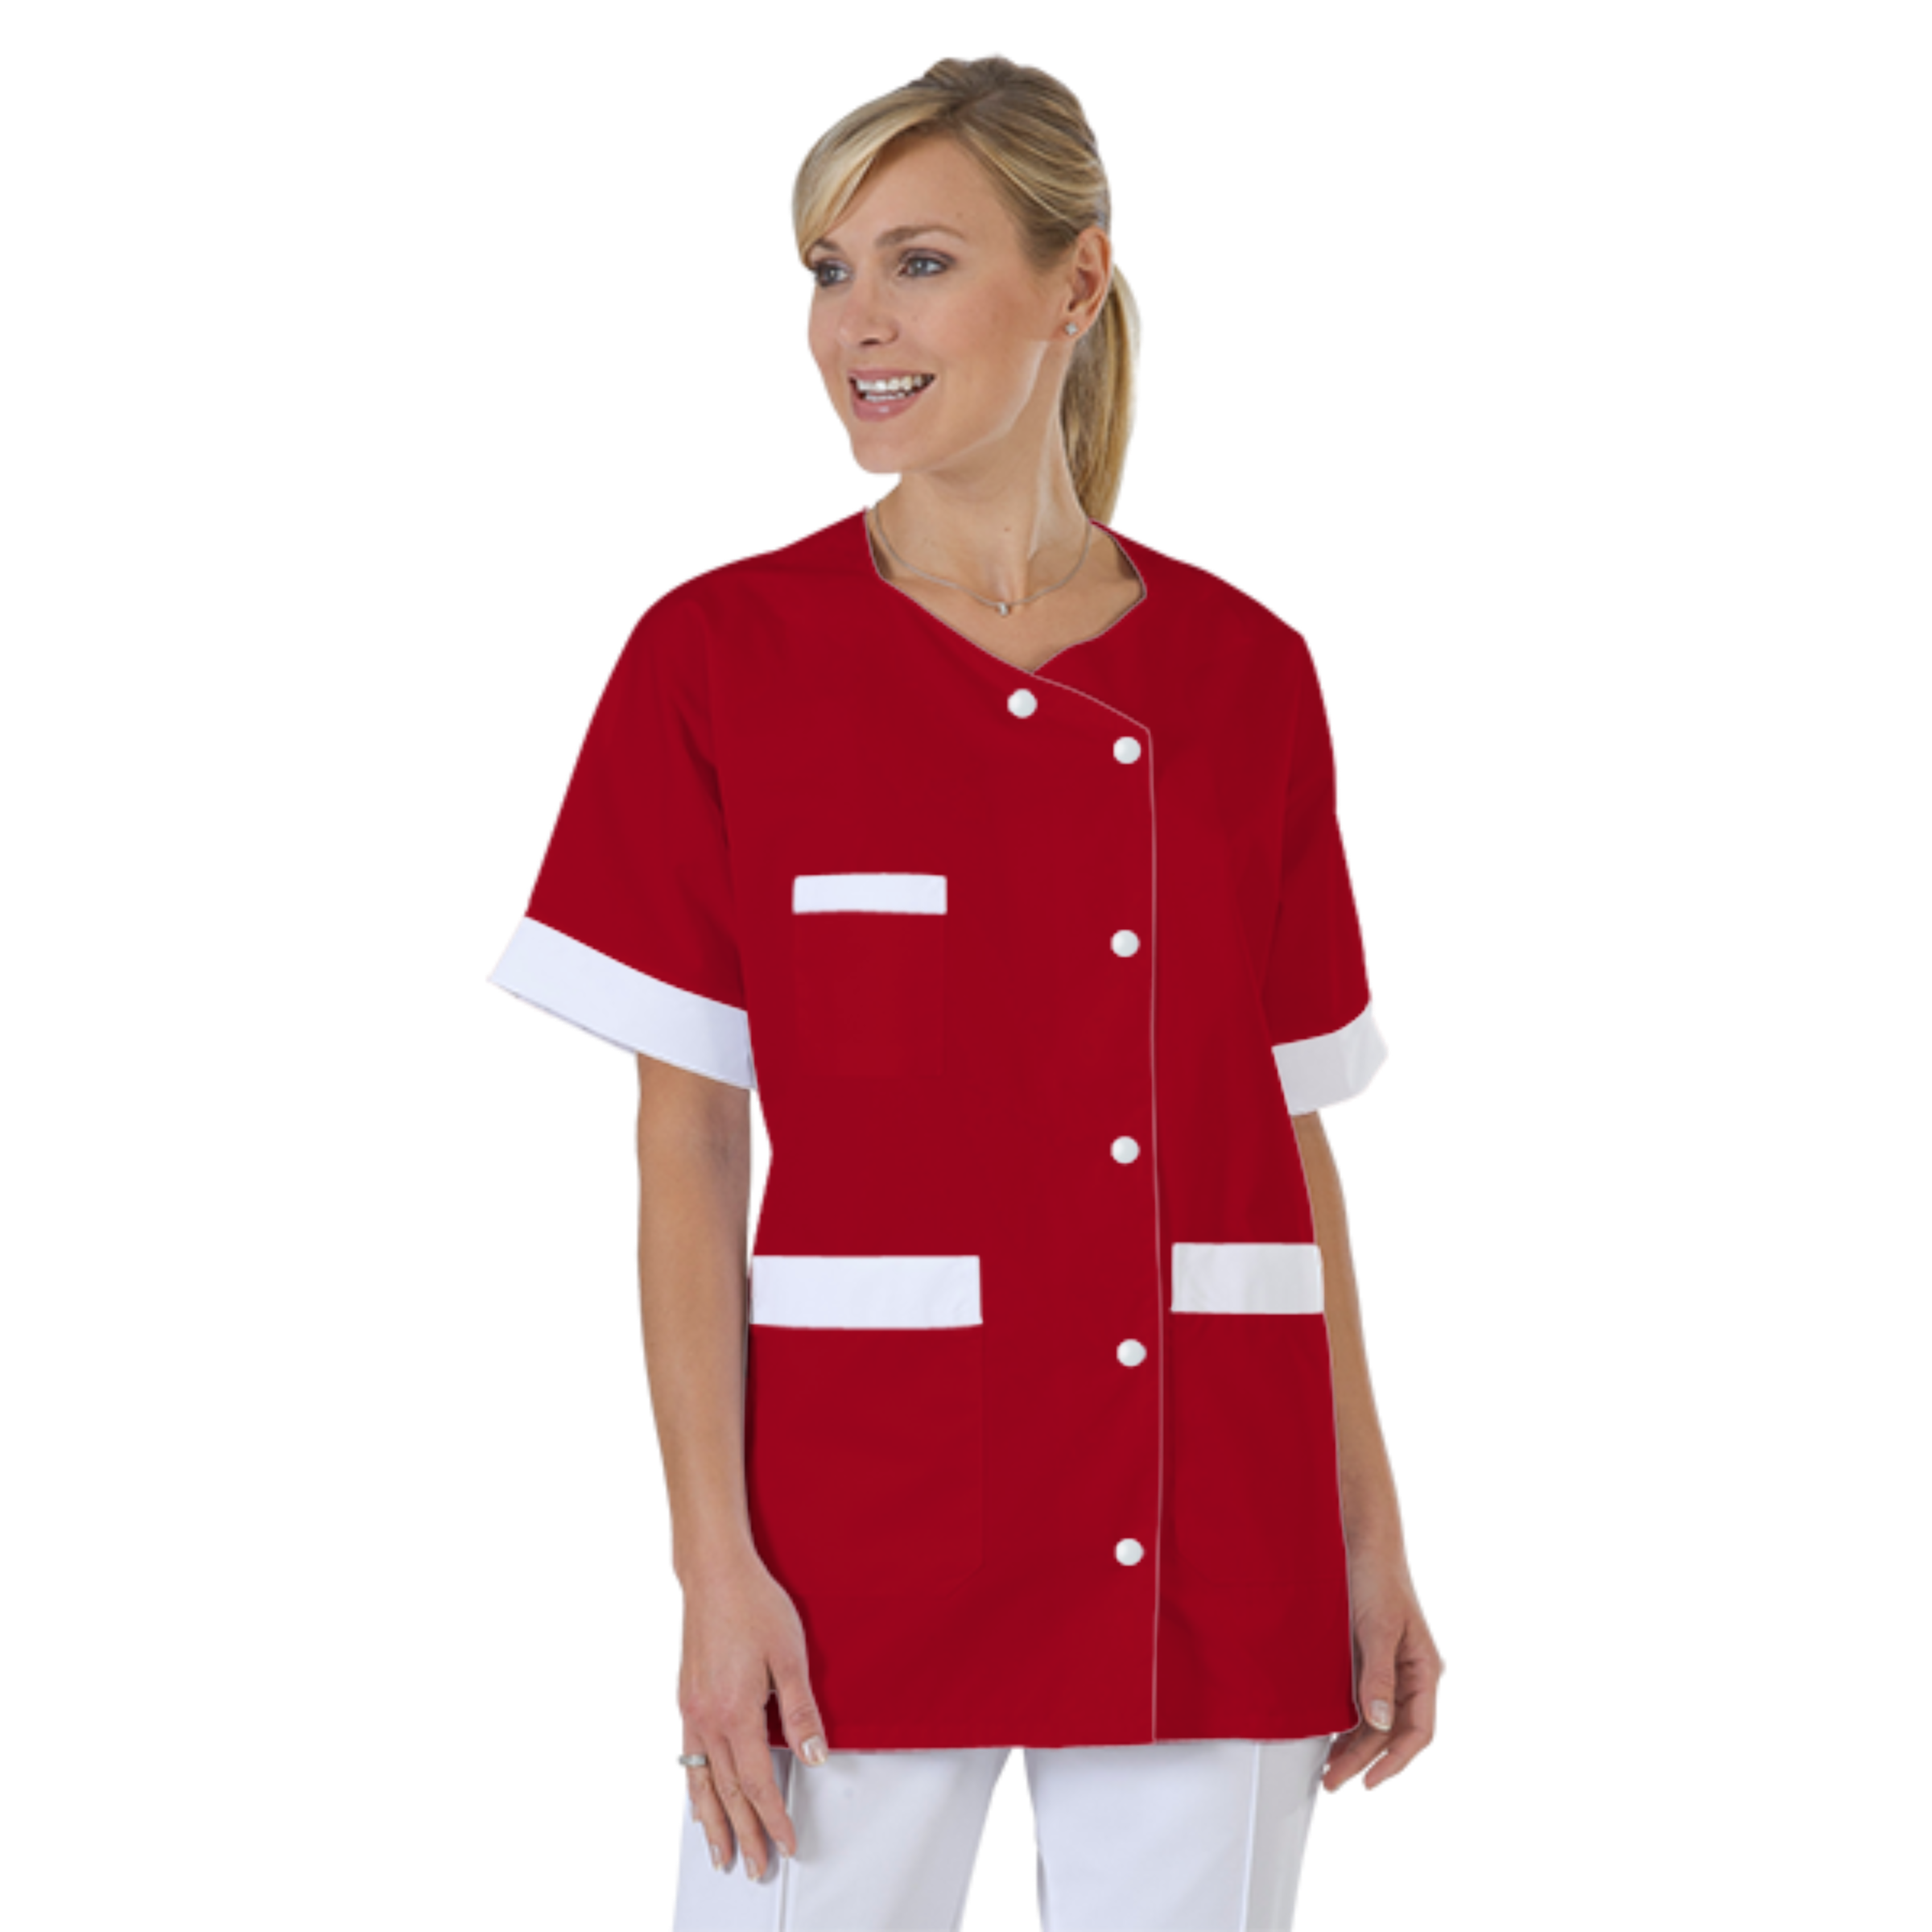 blouse-infirmiere-personnalise-col-trapeze acheté - par Patricia - le 07-03-2017